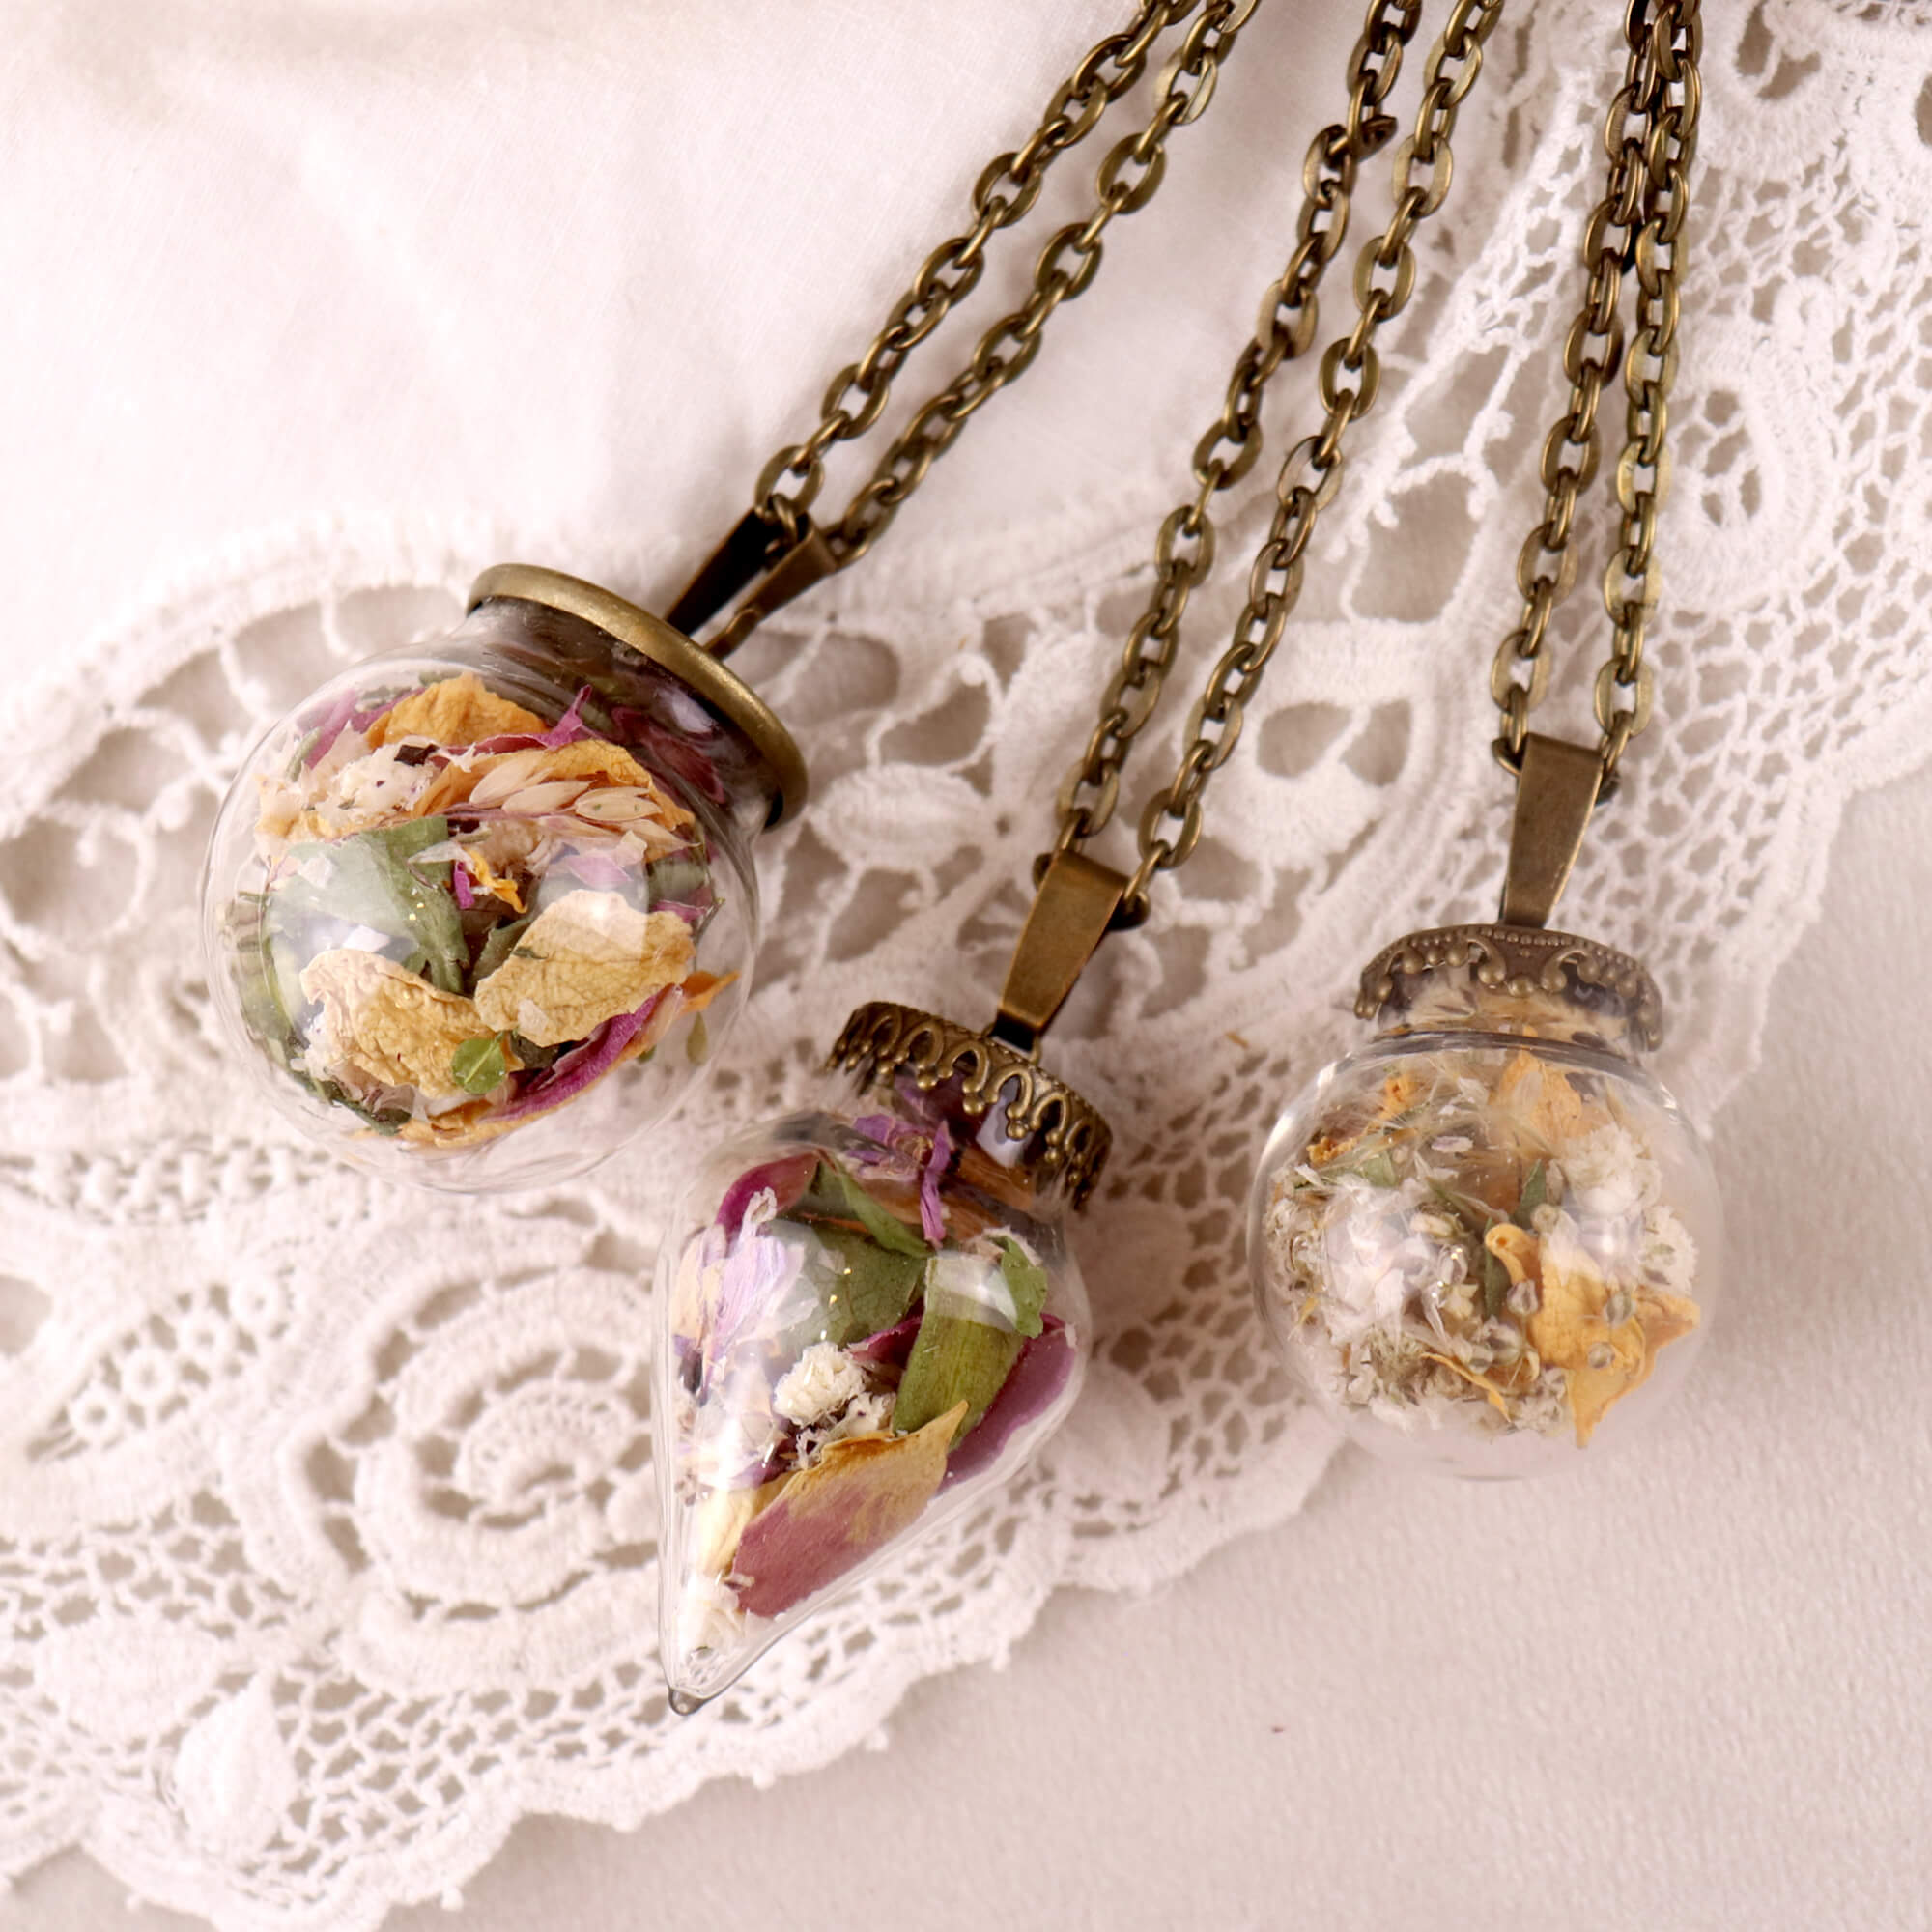 Petals in glass jewellery